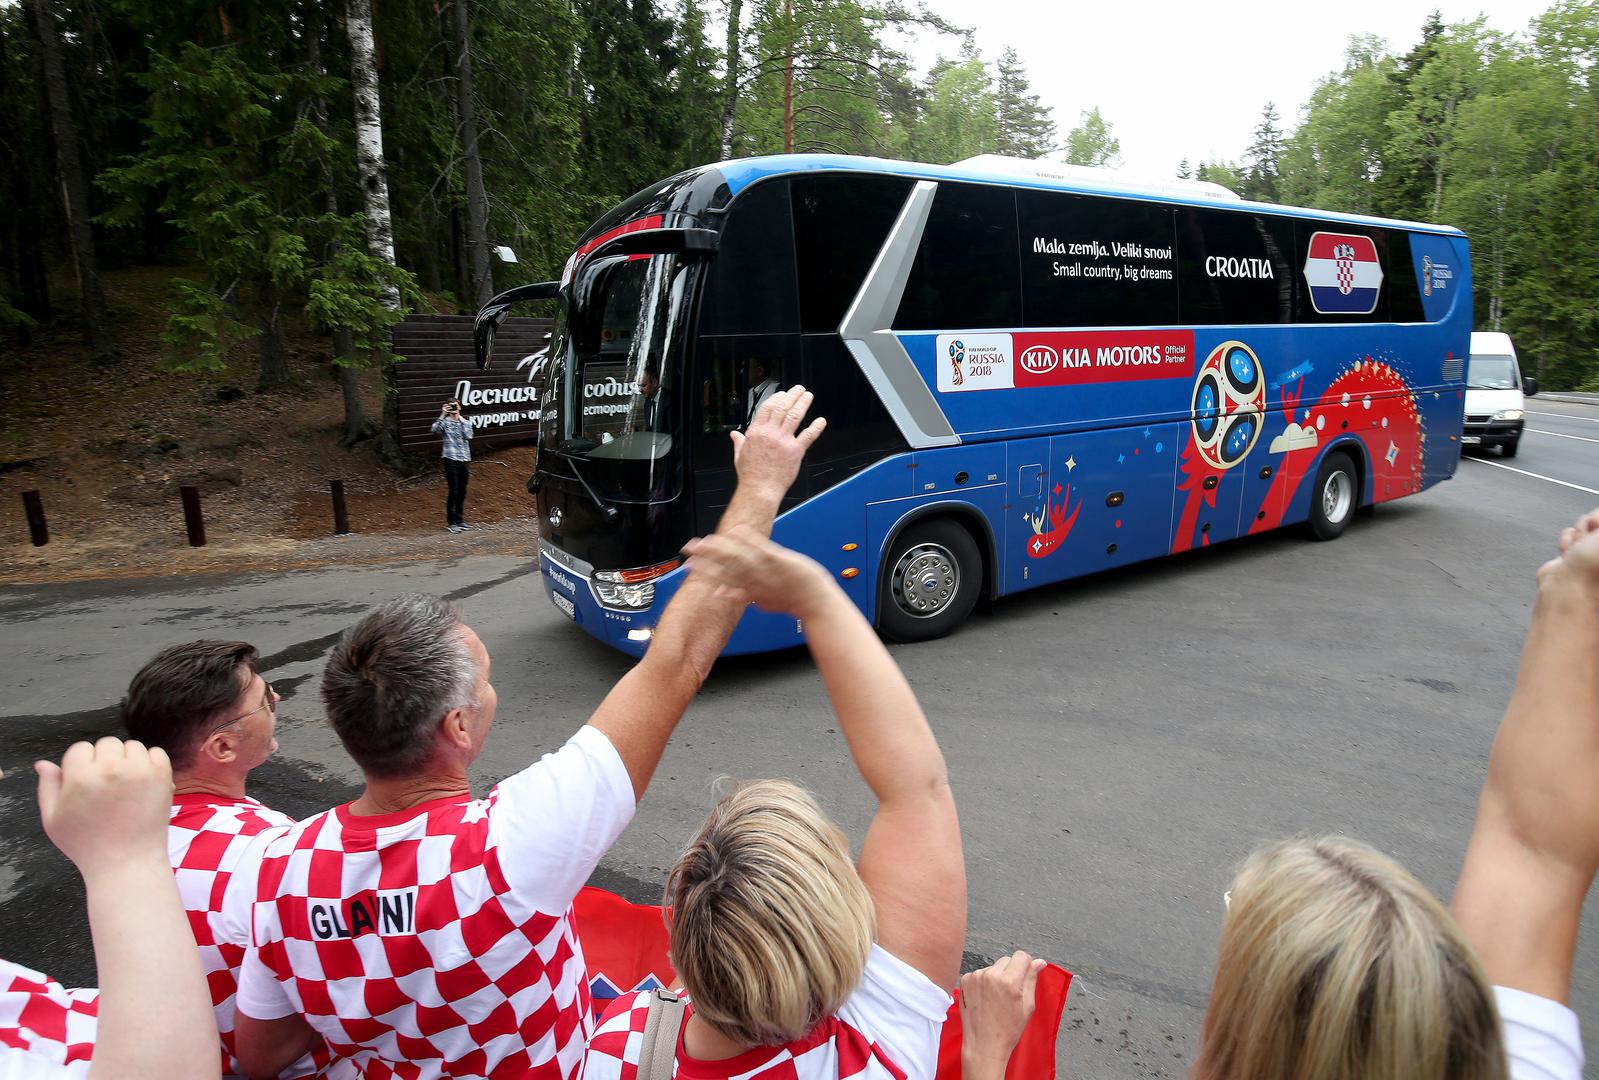 Hrvatska nogometna reprezentacija doputovala je u hotelski kompleks "Šumska rapsodija", u mjestu Iličevo u Zelenogorsku, 60-ak kilometara od Sankt Peterburga, koji će biti dom vatrenih za vrijeme SP-a u Rusiji